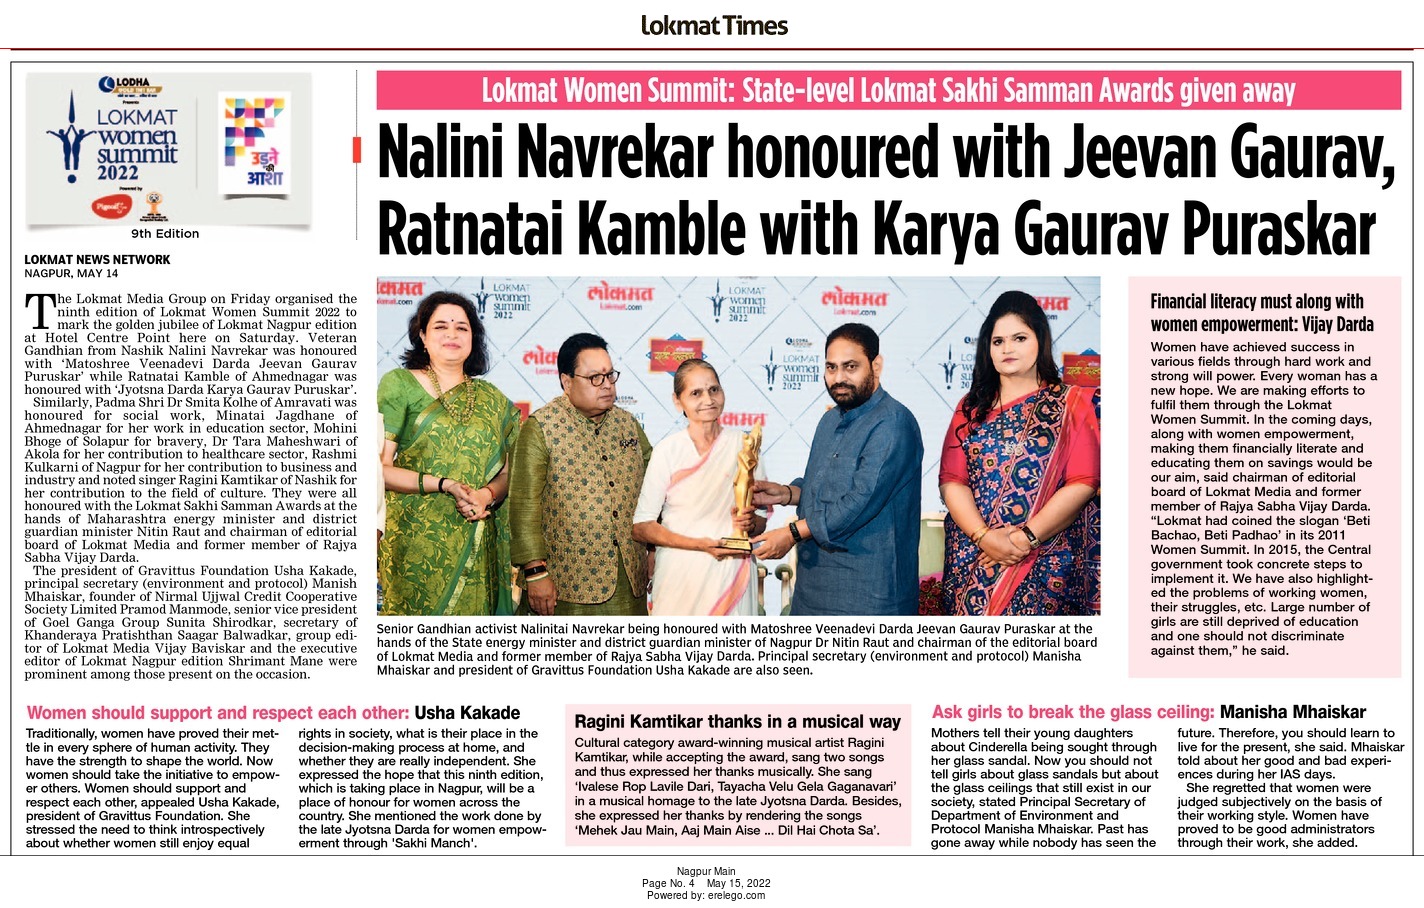 Nalini Navrekar honoured with Jeevan Gaurav, Ratnatai Kamble with Karya Gaurav Puraskar